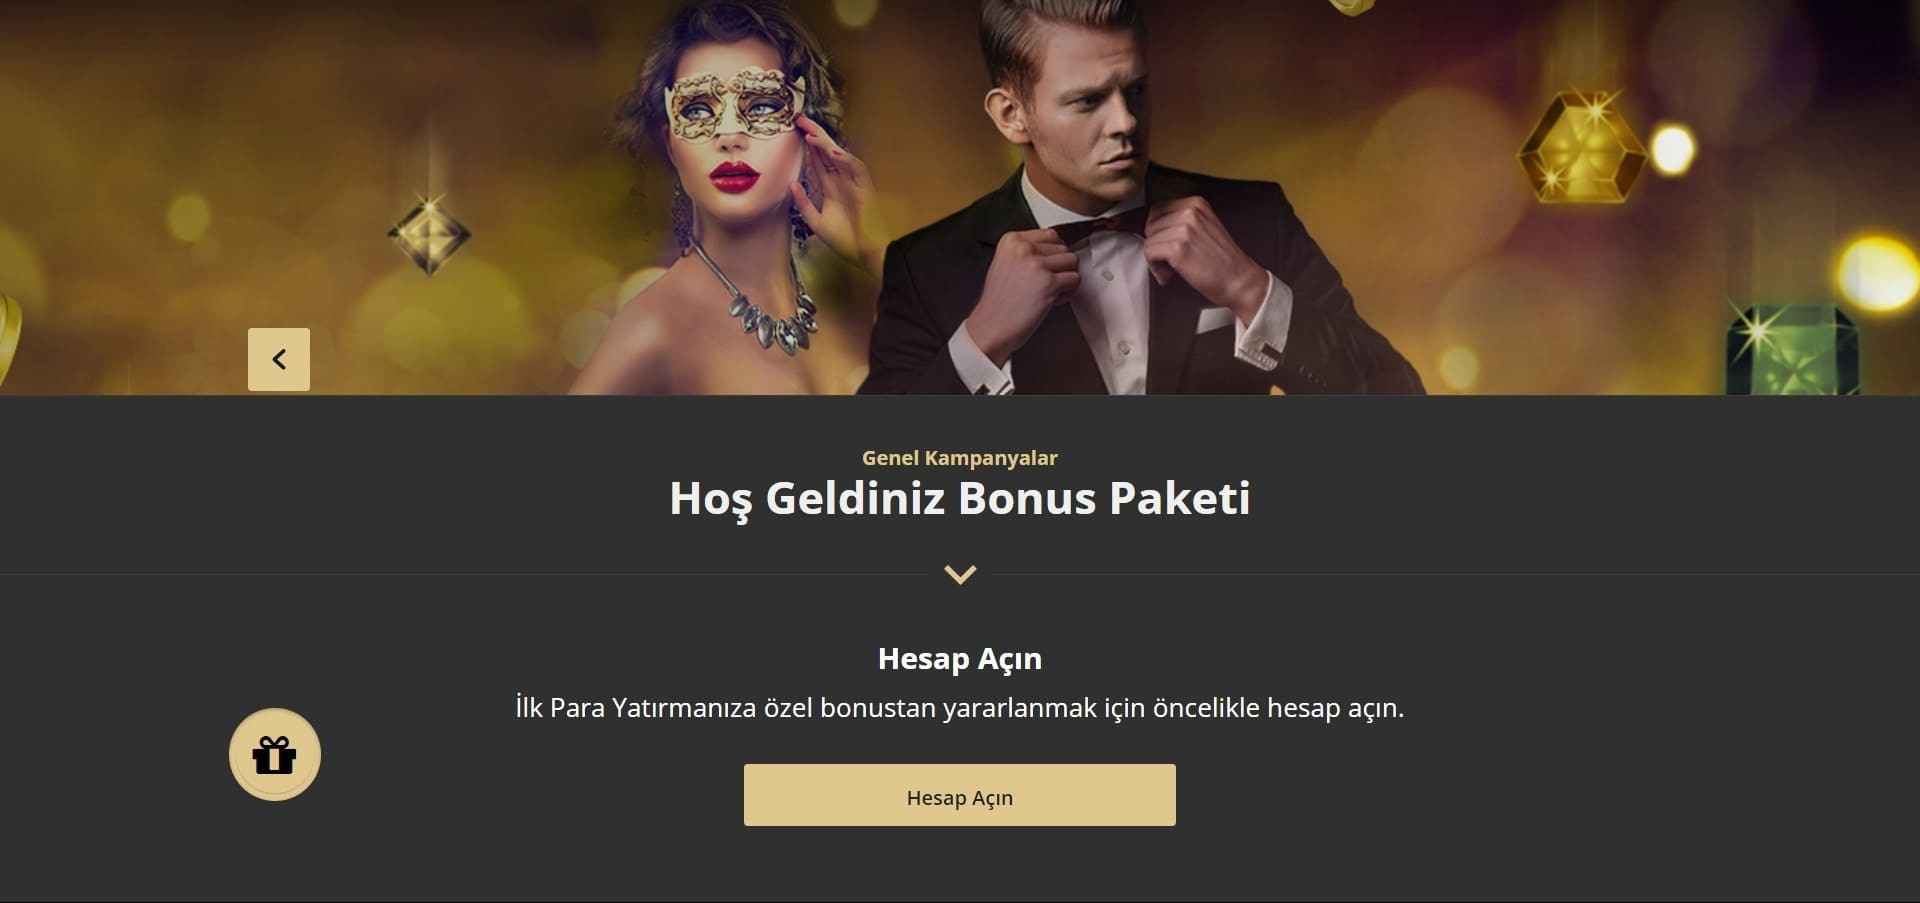 Casino Metropol Bonusları